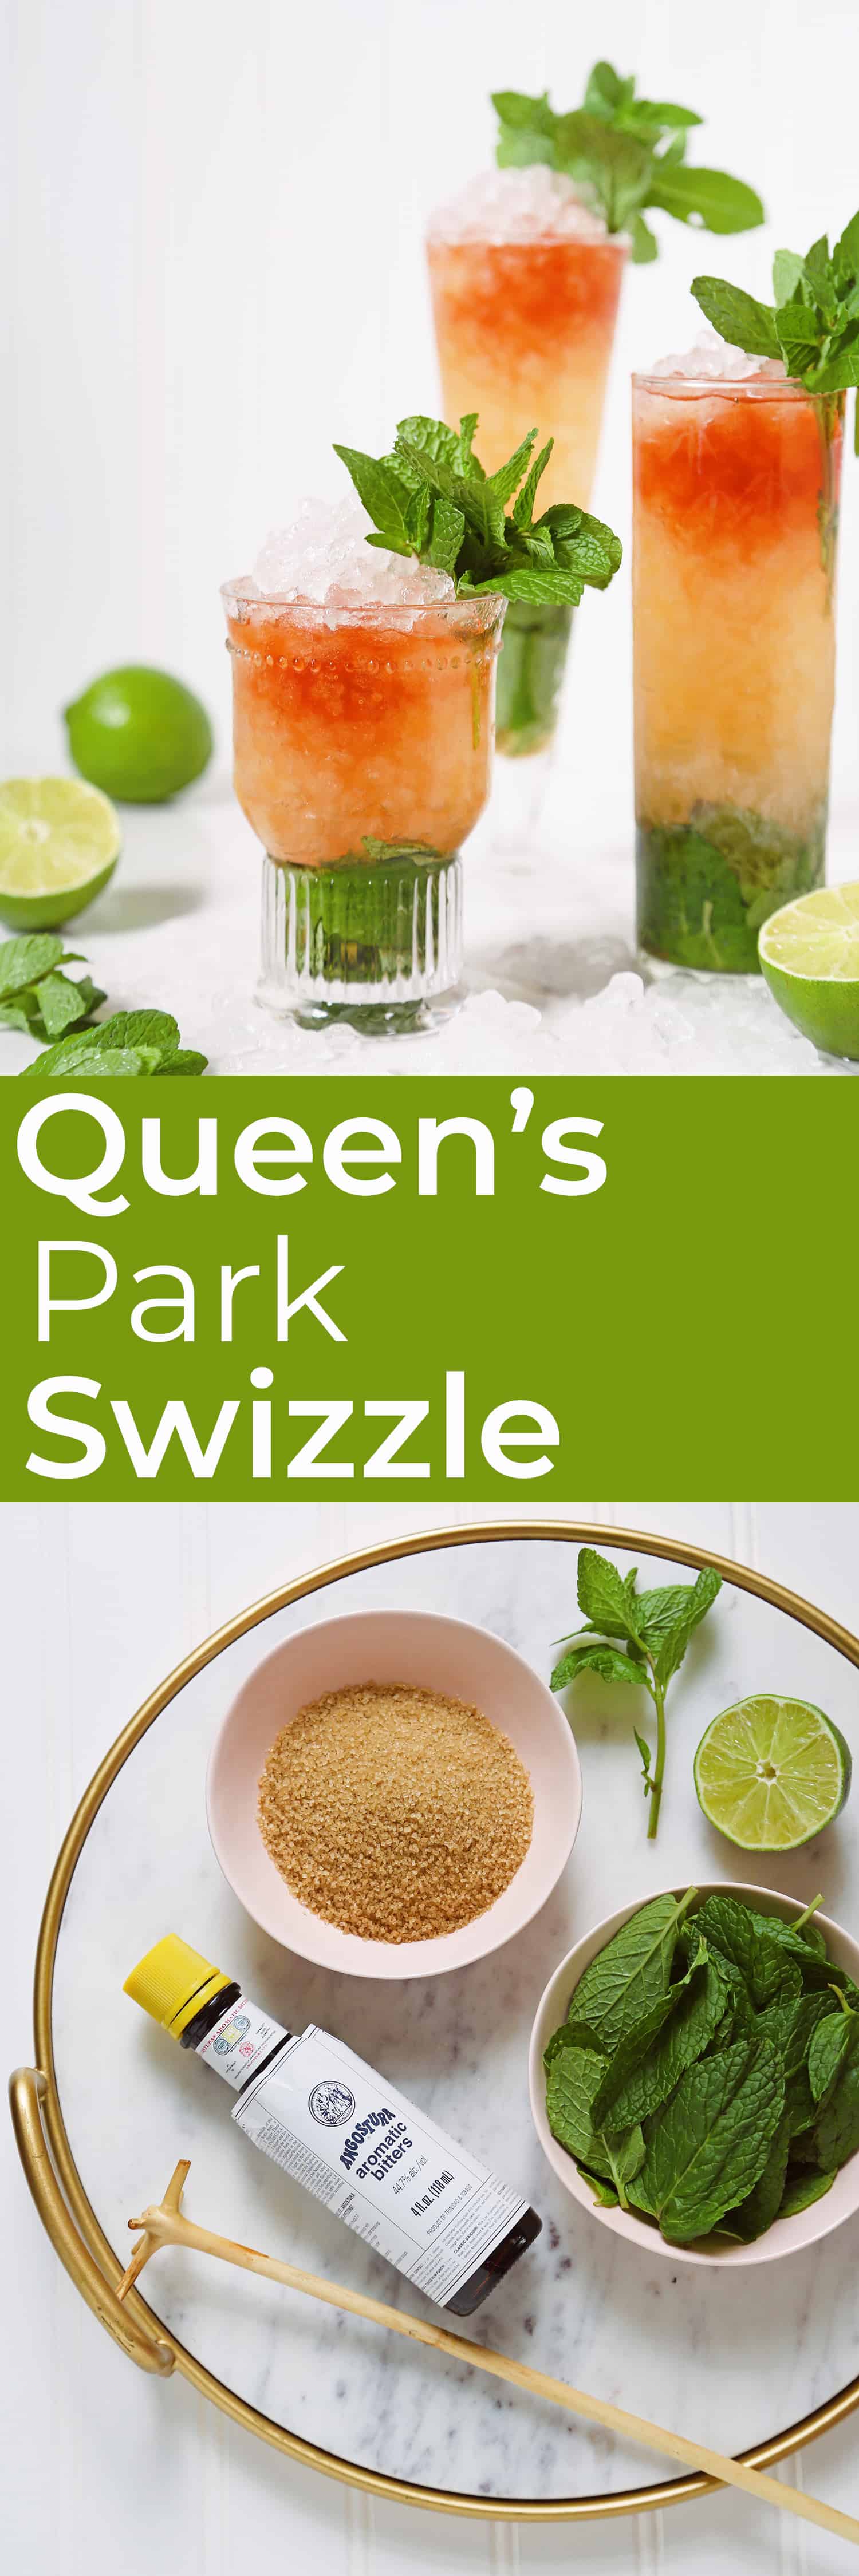 Queen's Park Swizzle